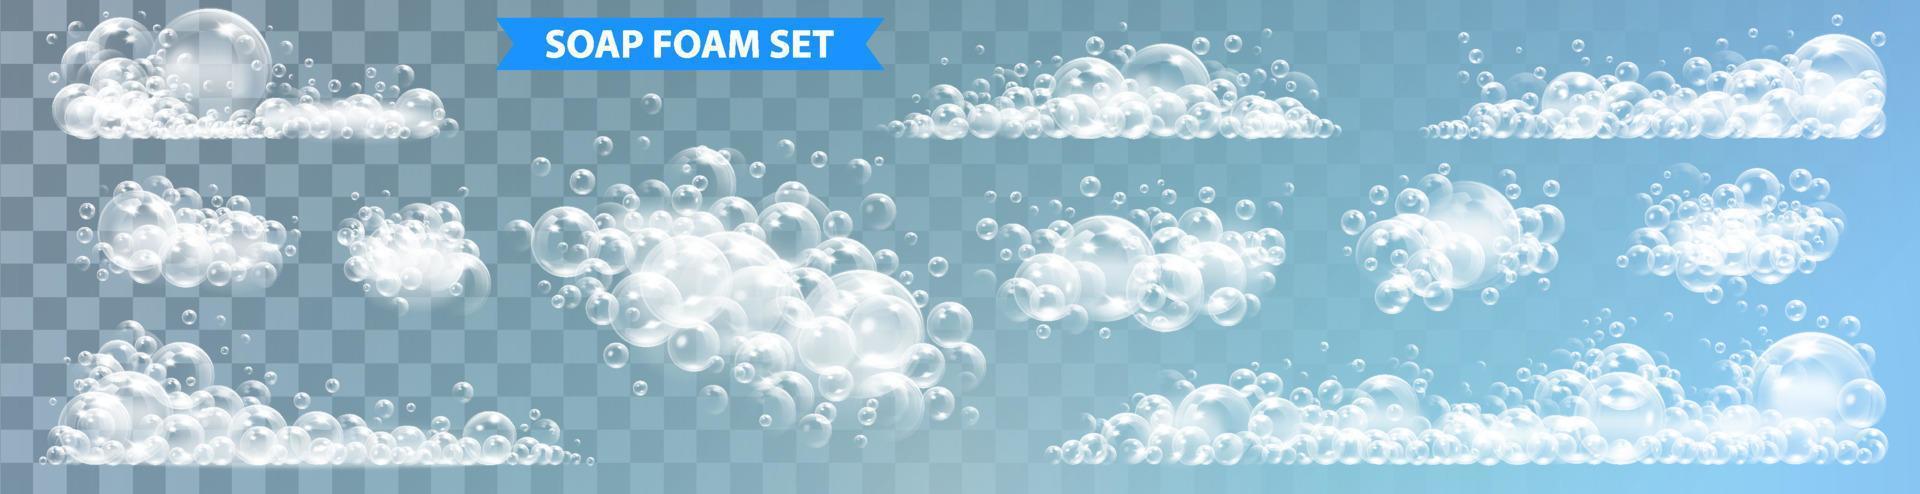 Seife Schaum mit Luftblasen isoliert Vektor Illustration